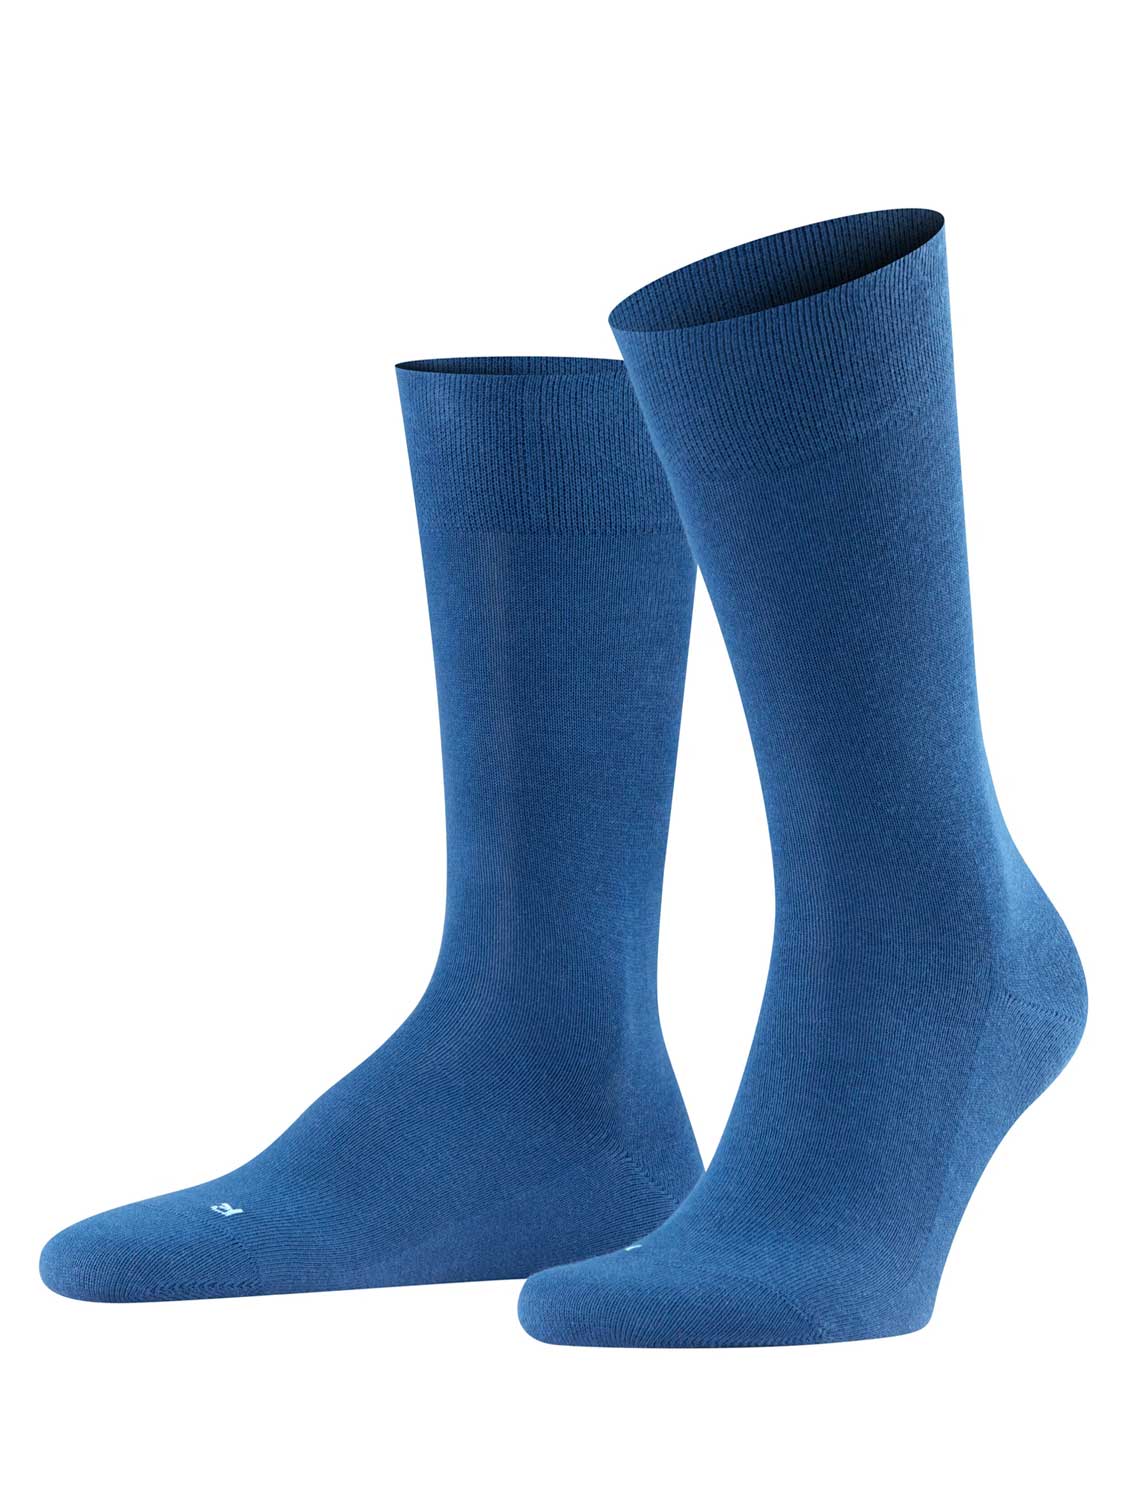 FALKE Sensitive London met comfort tailleband voor diabetici versterkte herensokken zonder patroon ademend breed enkele kleur Duurzaam Katoen Blauw Heren sokken - Maat 39-42